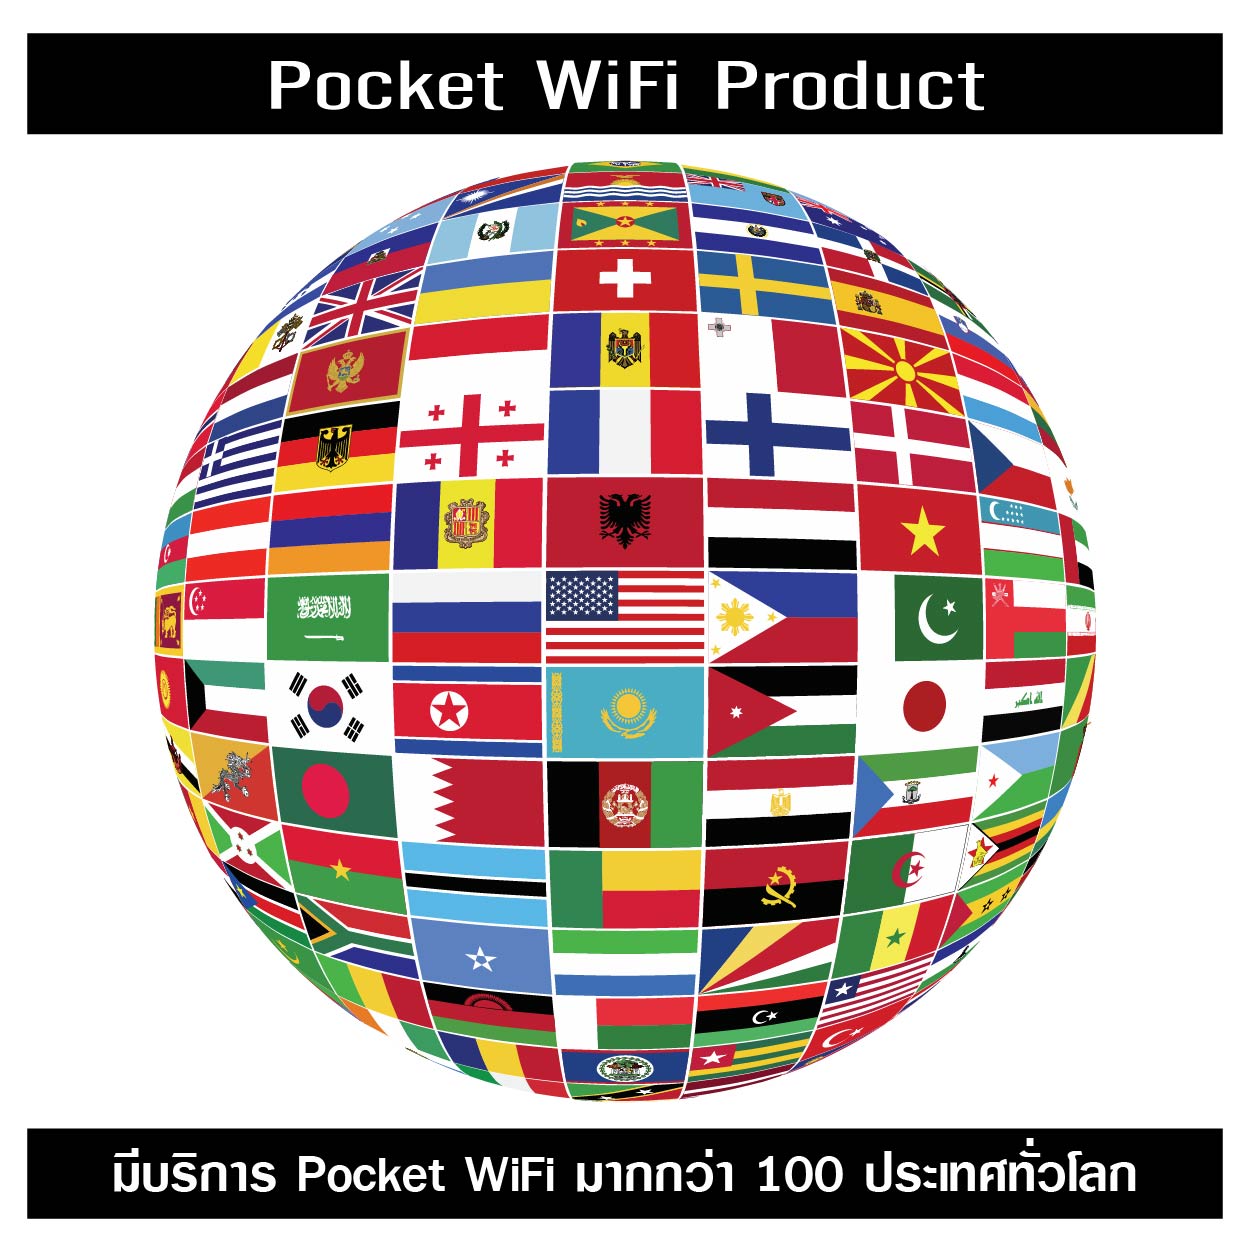 บริการ pocket wifi มากกว่า 100 ประเทศทั่วโลก